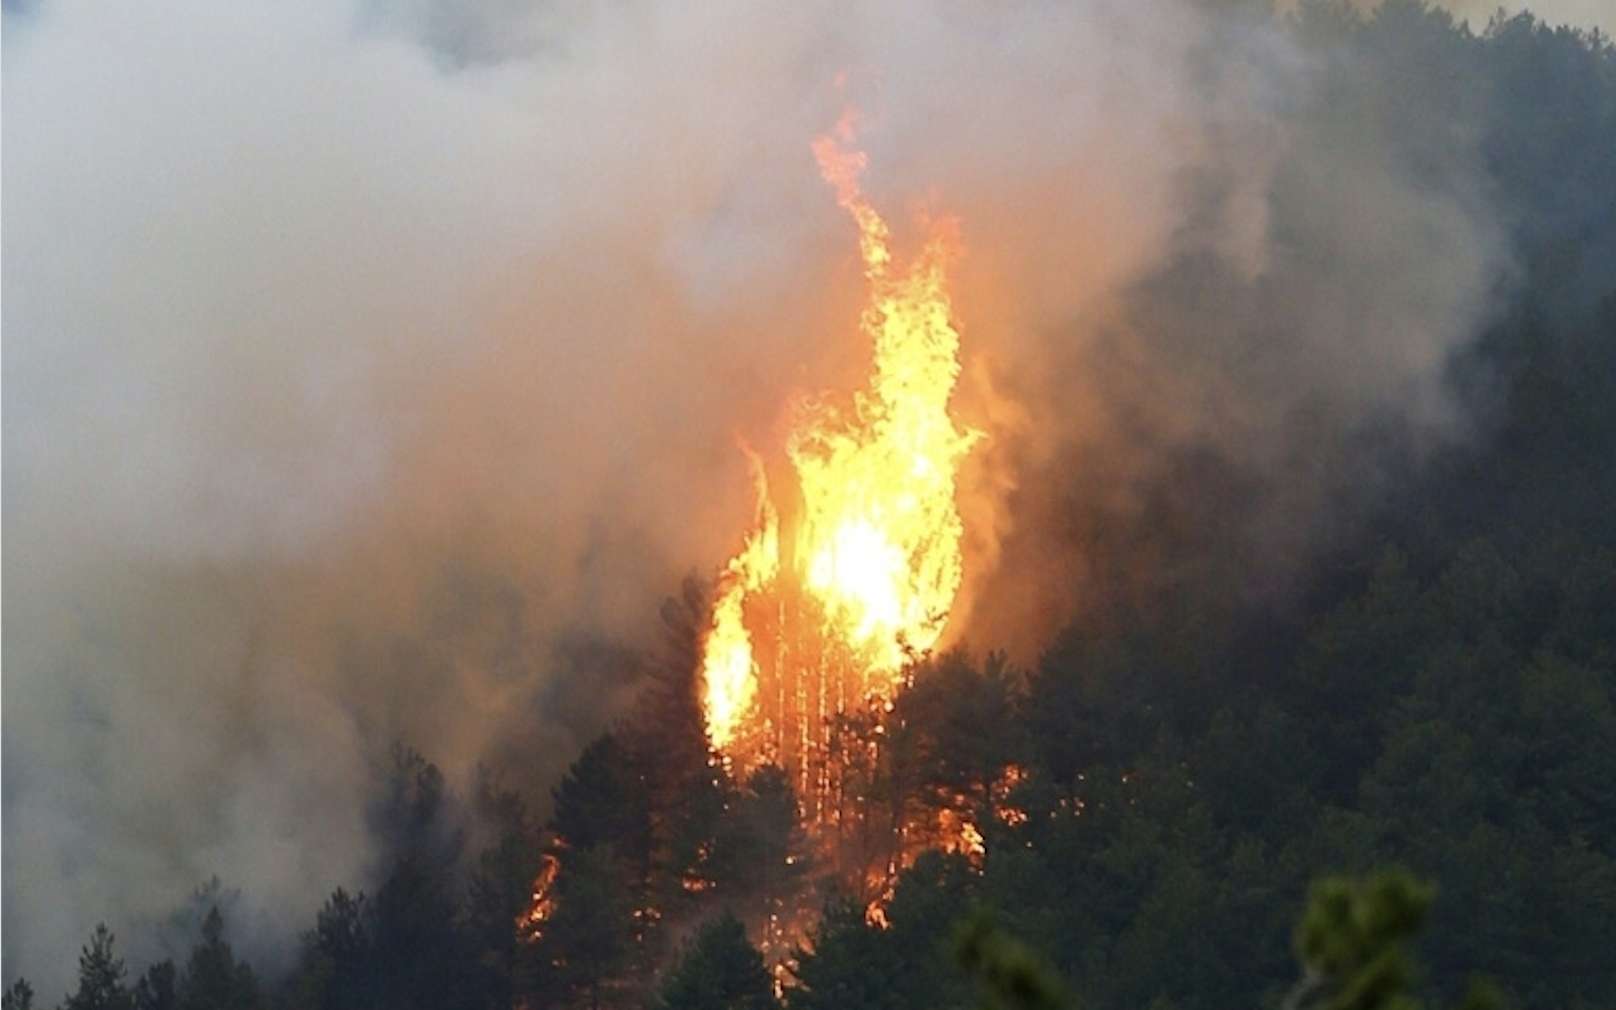 Incendie en Corse : plus de 1.000 hectares de végétation détruits